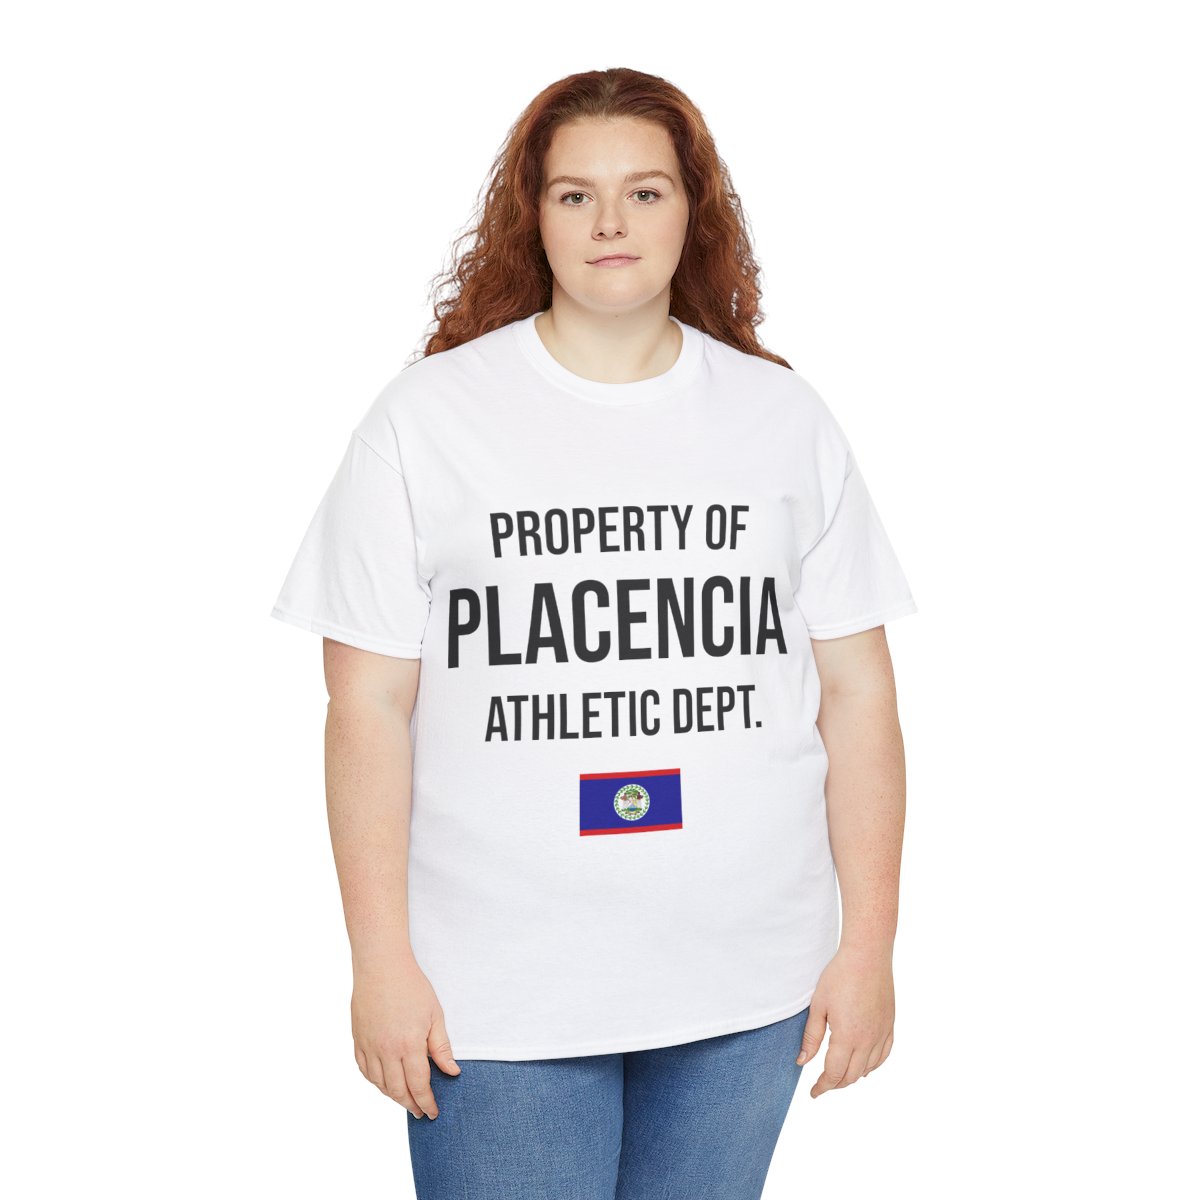 Placencia Athletic Dept. Unisex Tshirt product thumbnail image